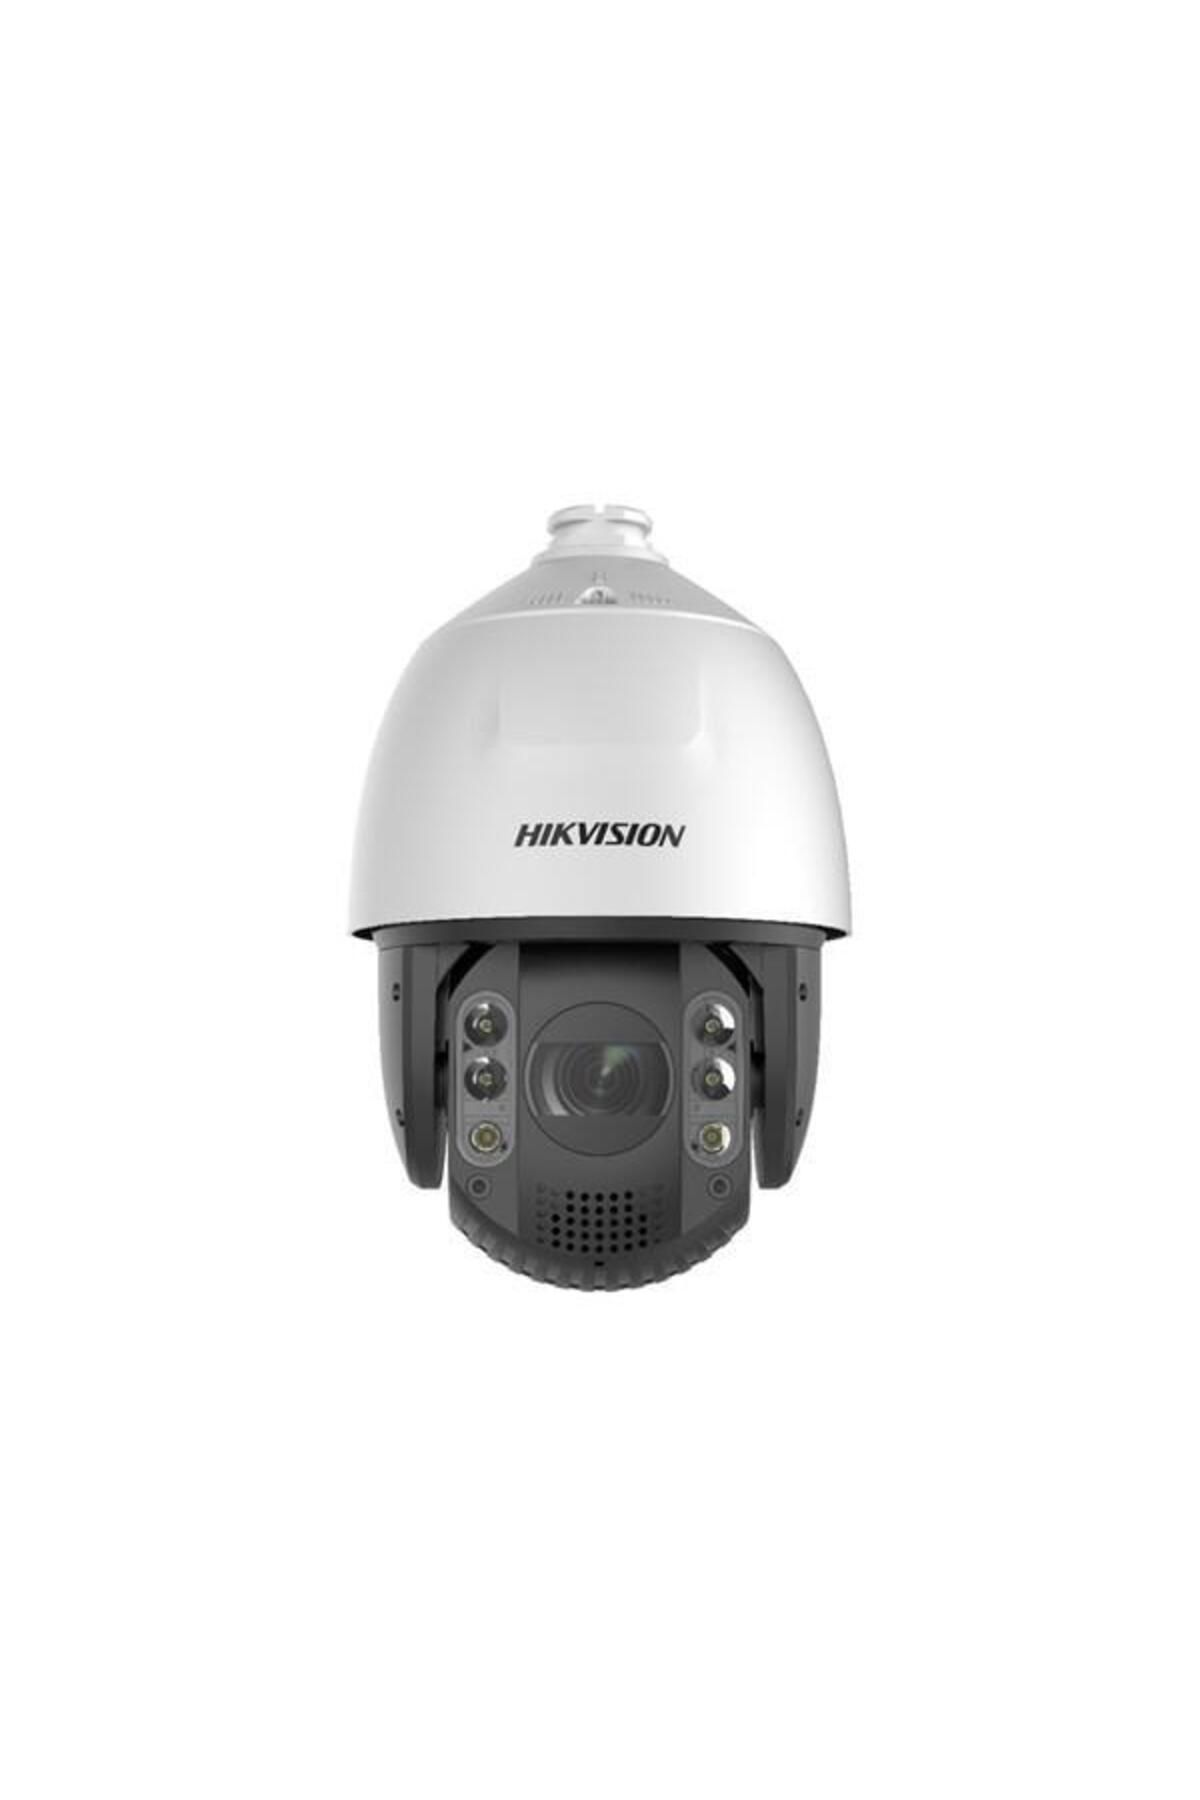 Hikvision Hıkvısıon Ds-2De7a432ıw-Aeb 4Mp 32X 5.9-188.8Mm 200Mt Ir Ptz Speed Dome Ip Kamera + Montaj Ayağı